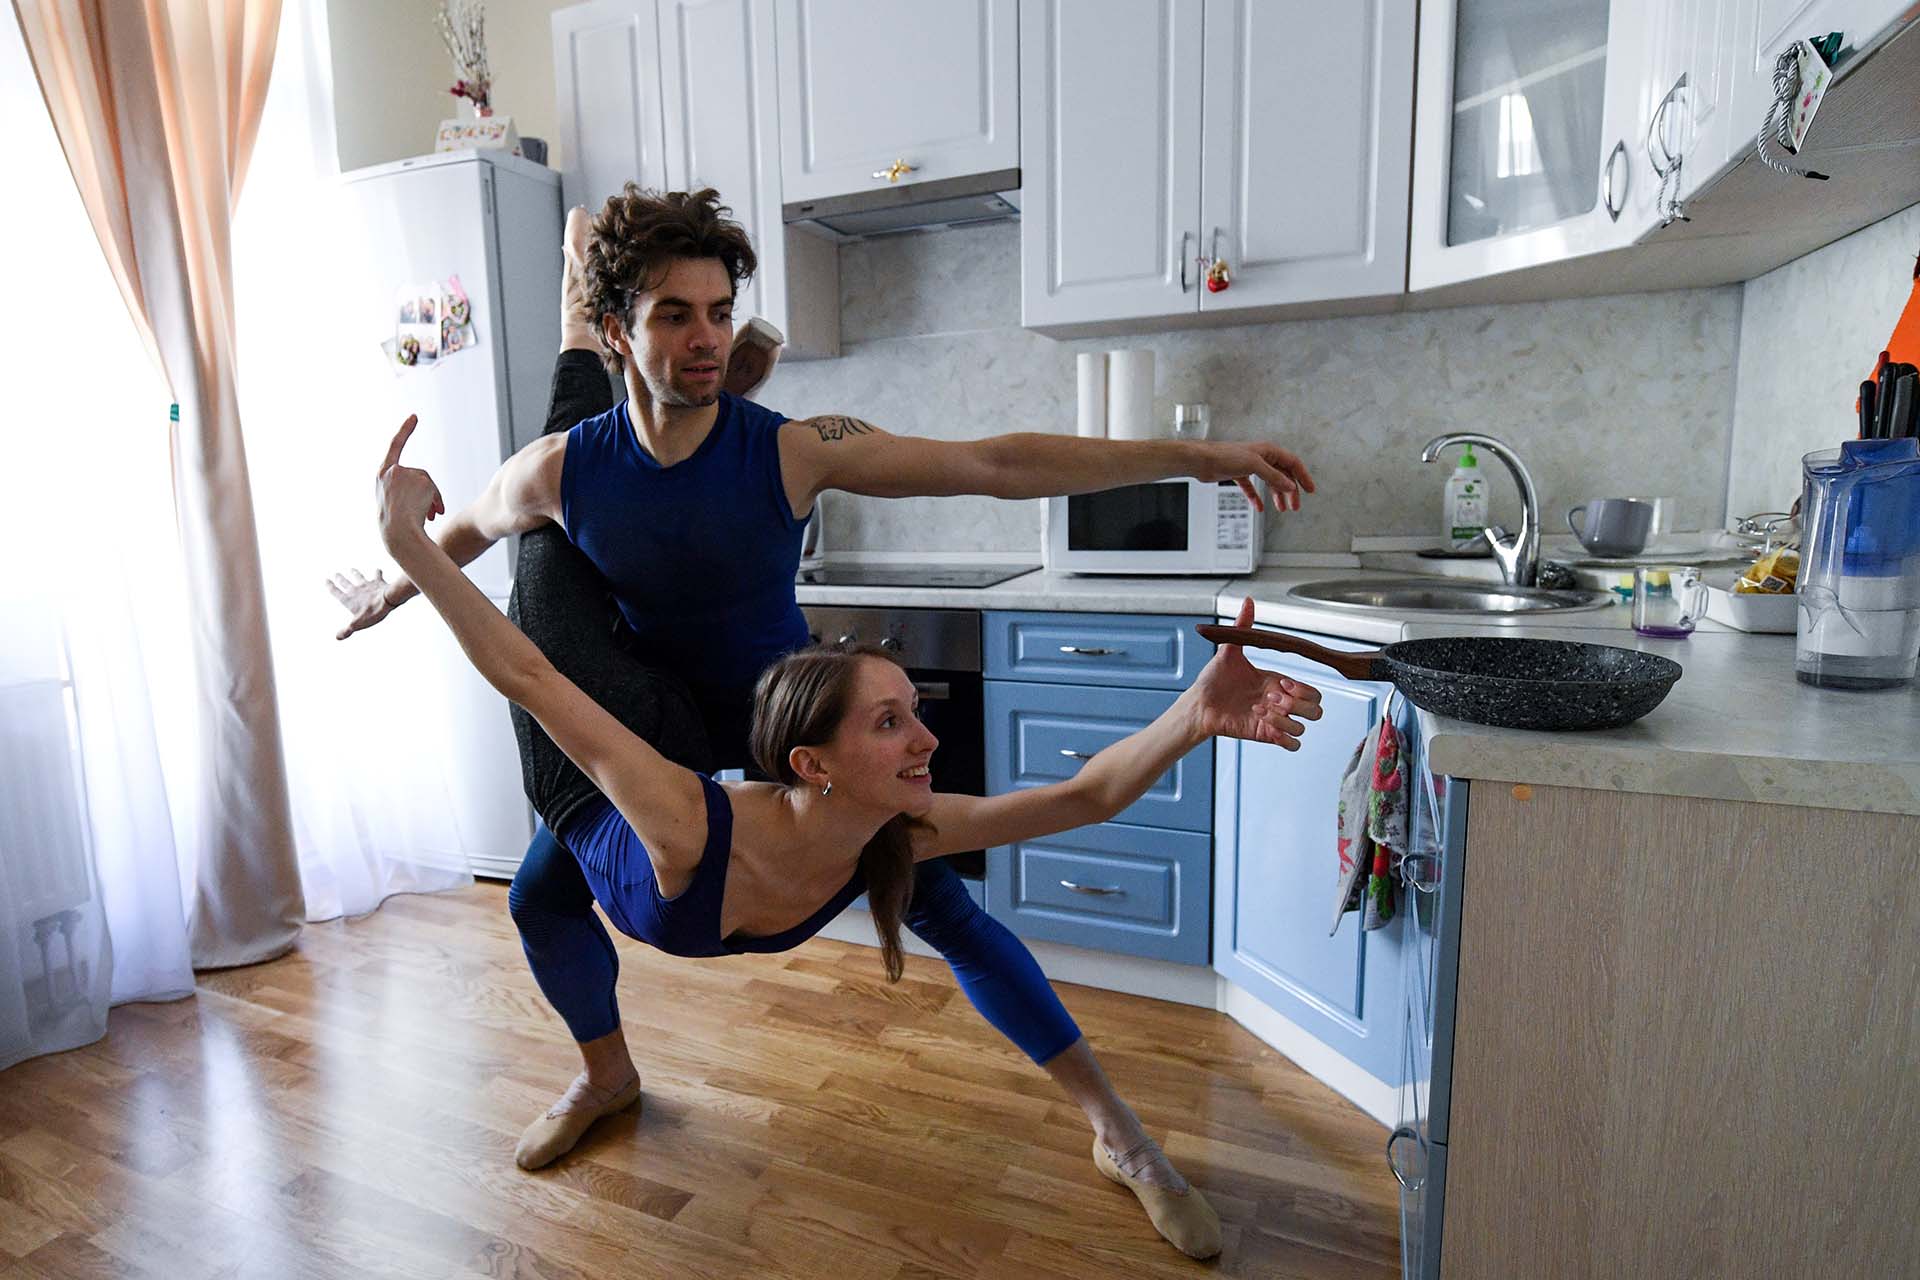 Los bailarines del Bolshoi Igor Tsvirko y Margarita Shrainer toman una clase en la cocina de su casa, durante el confinamiento en Moscú (29 de abril)